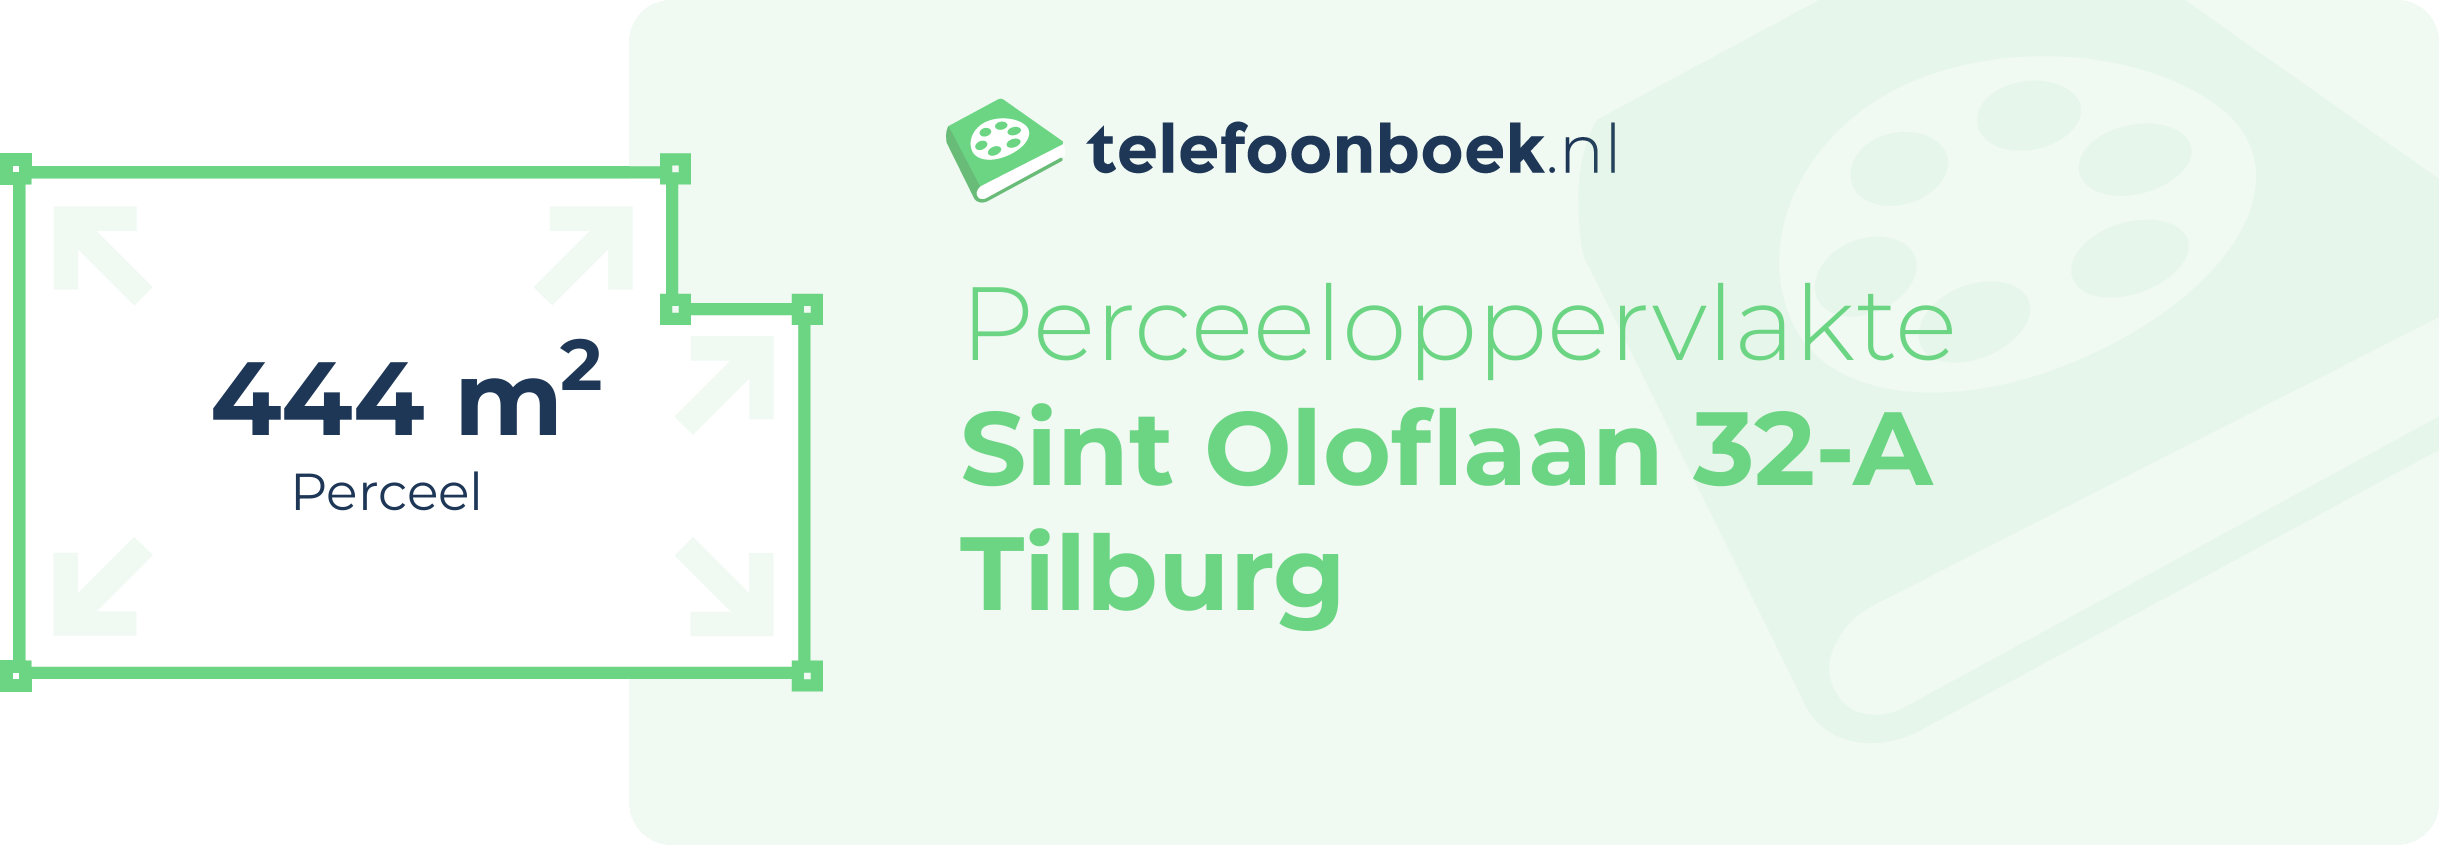 Perceeloppervlakte Sint Oloflaan 32-A Tilburg